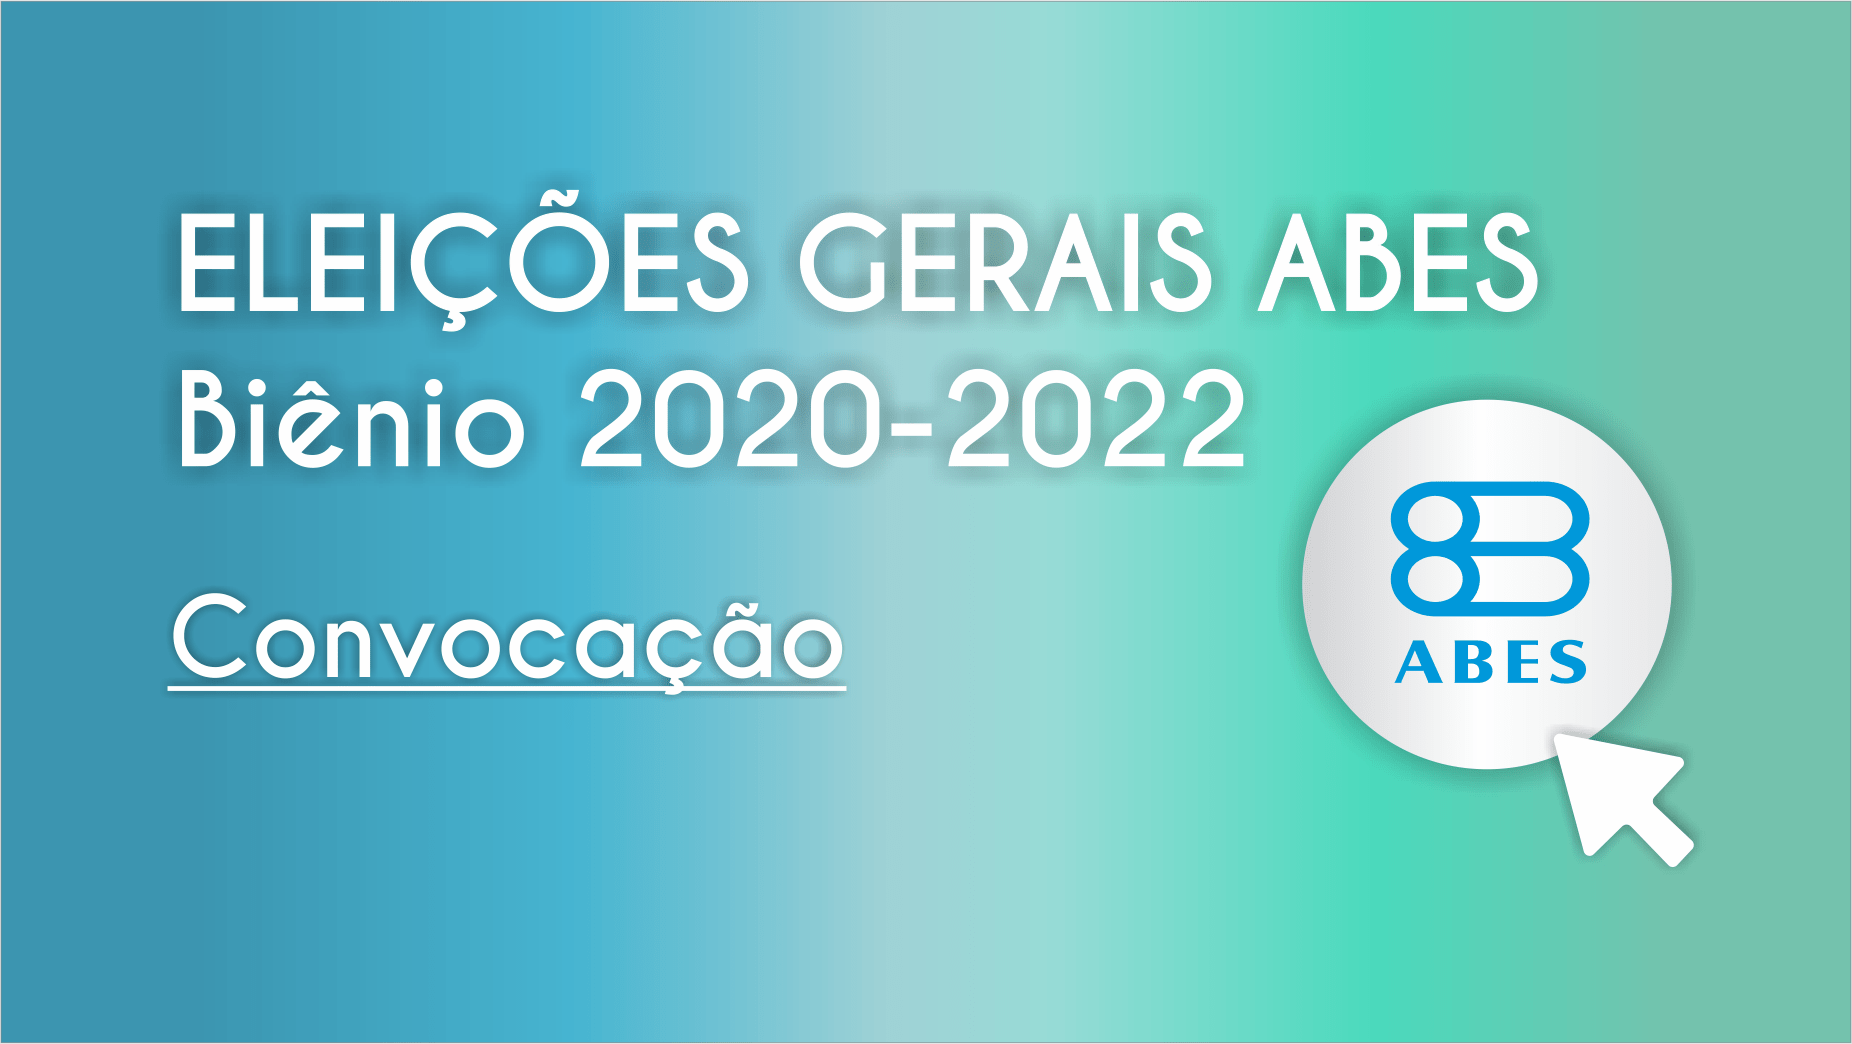 ABES-MG: diretoria e conselhos tomam posse para a gestão 2023-2025 - ABES